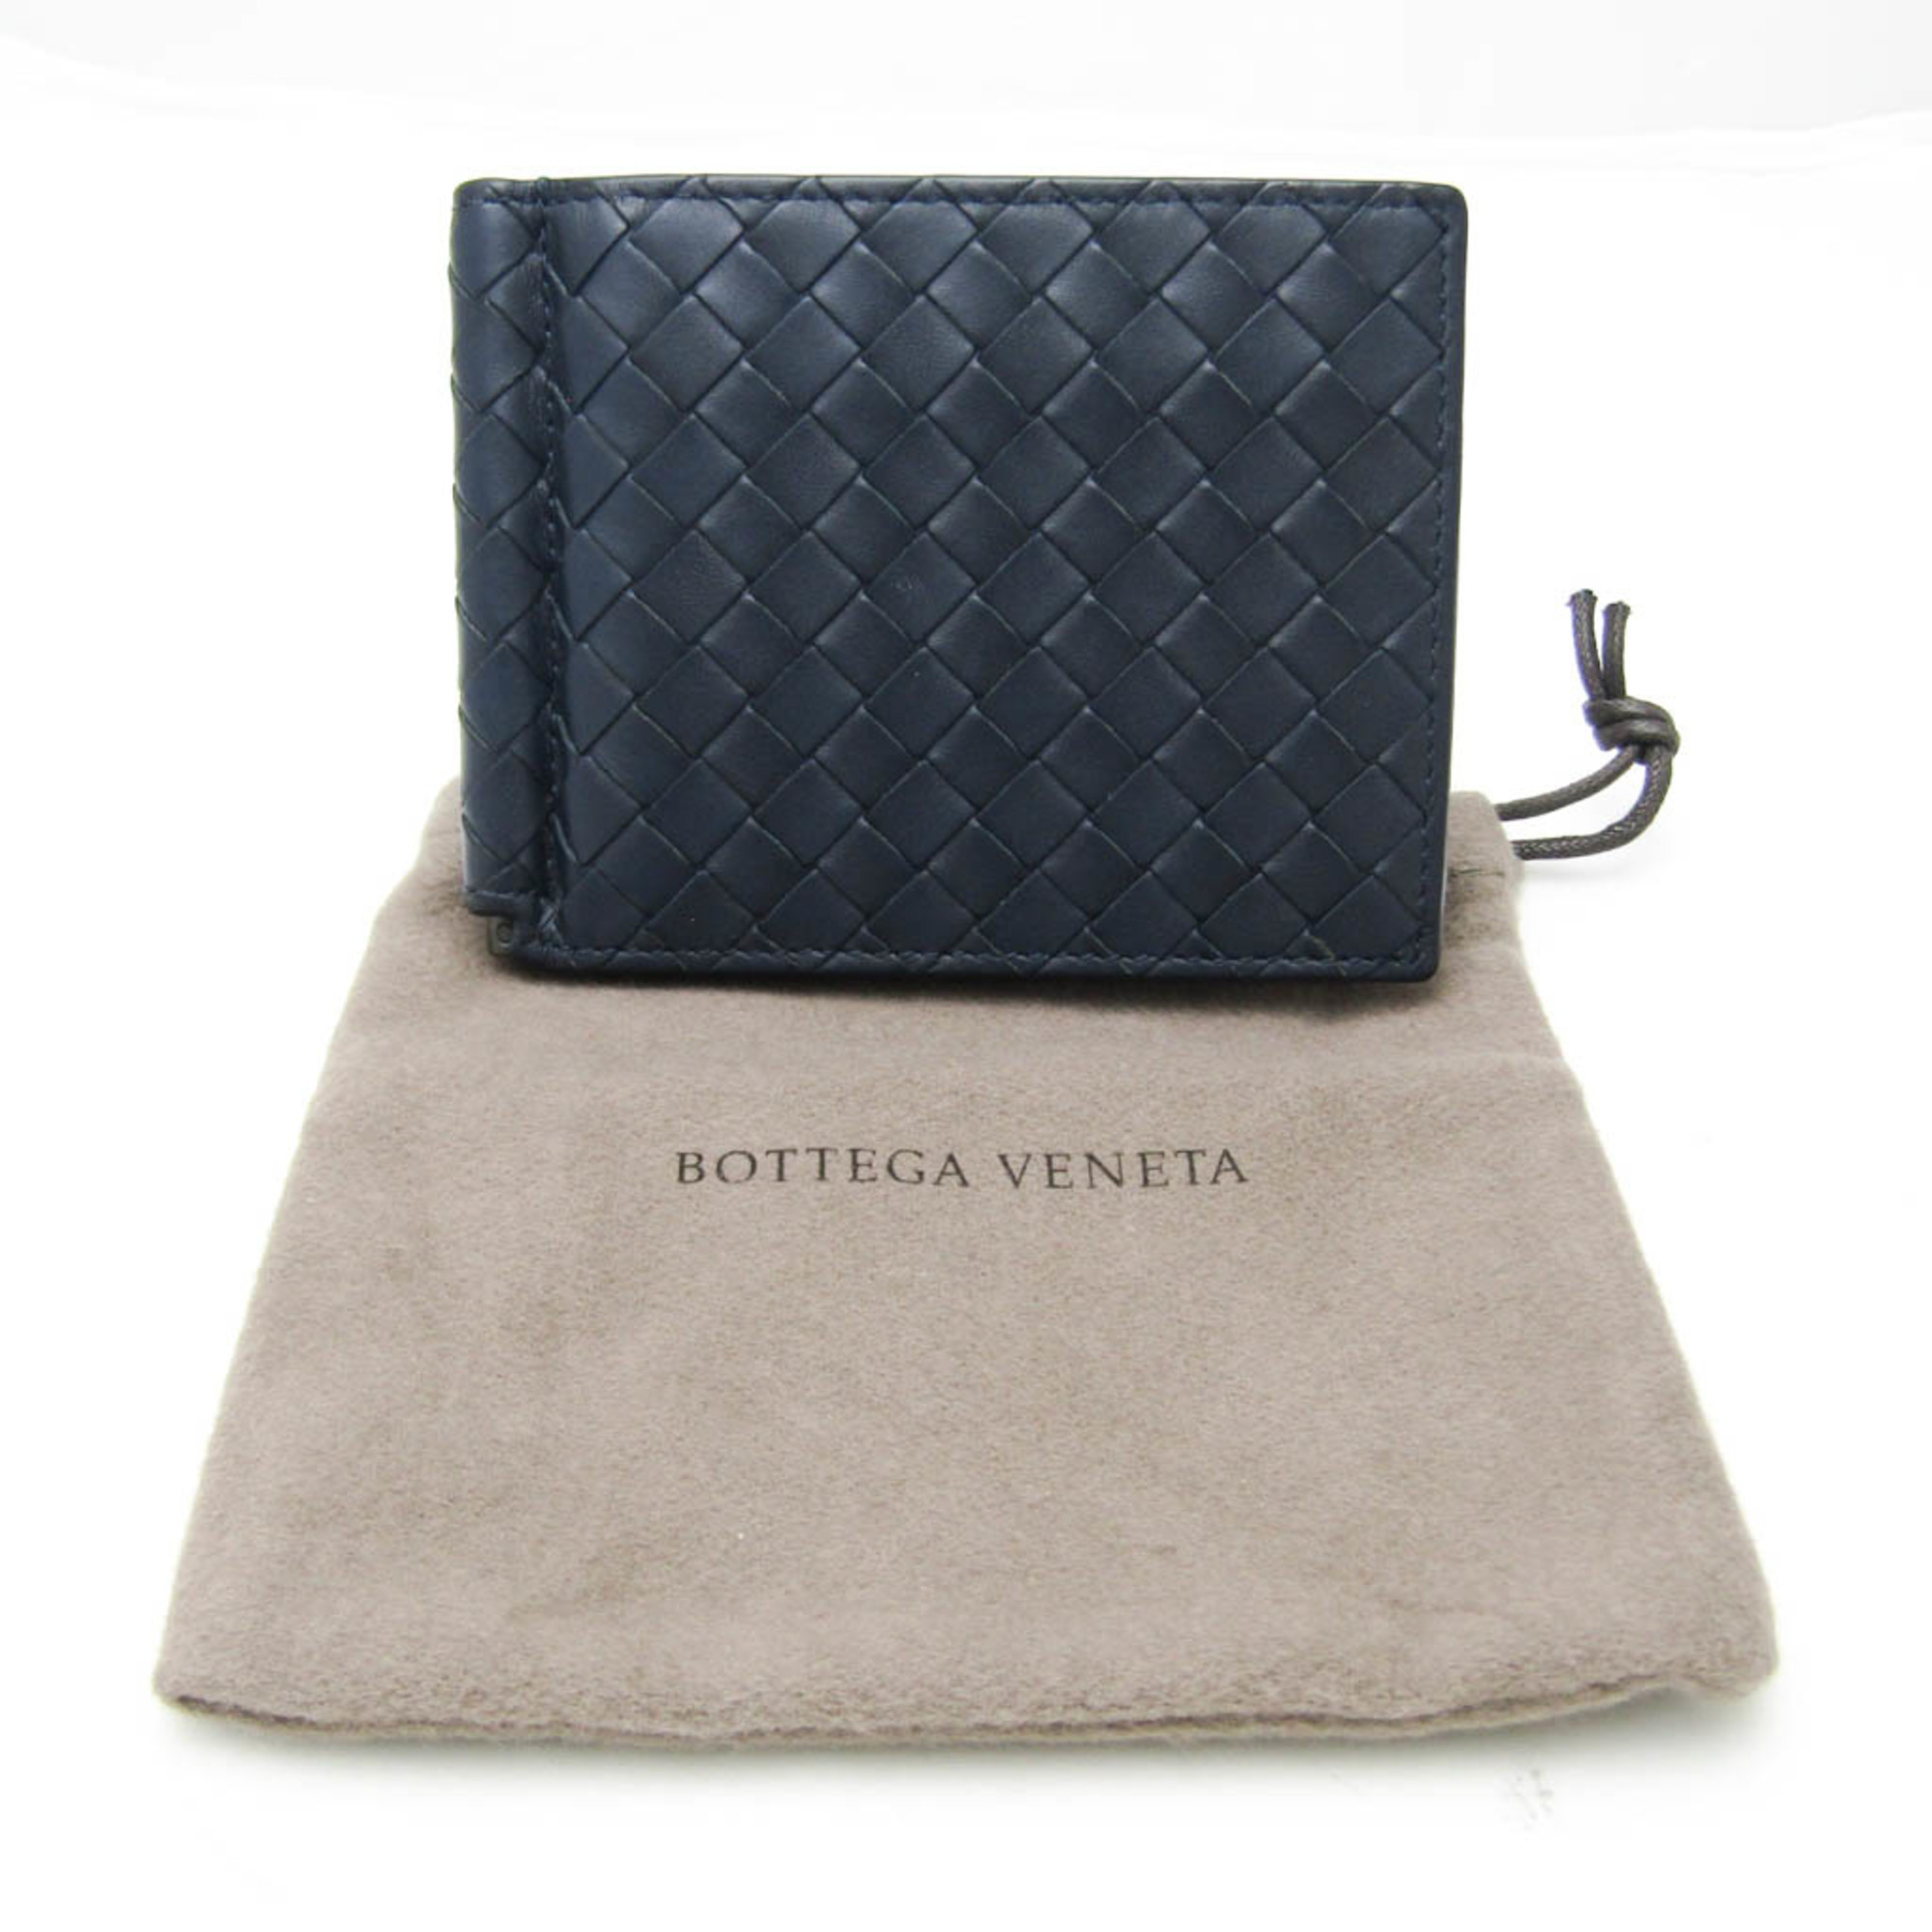 ボッテガ・ヴェネタ(Bottega Veneta) イントレチャート 123180 メンズ ...